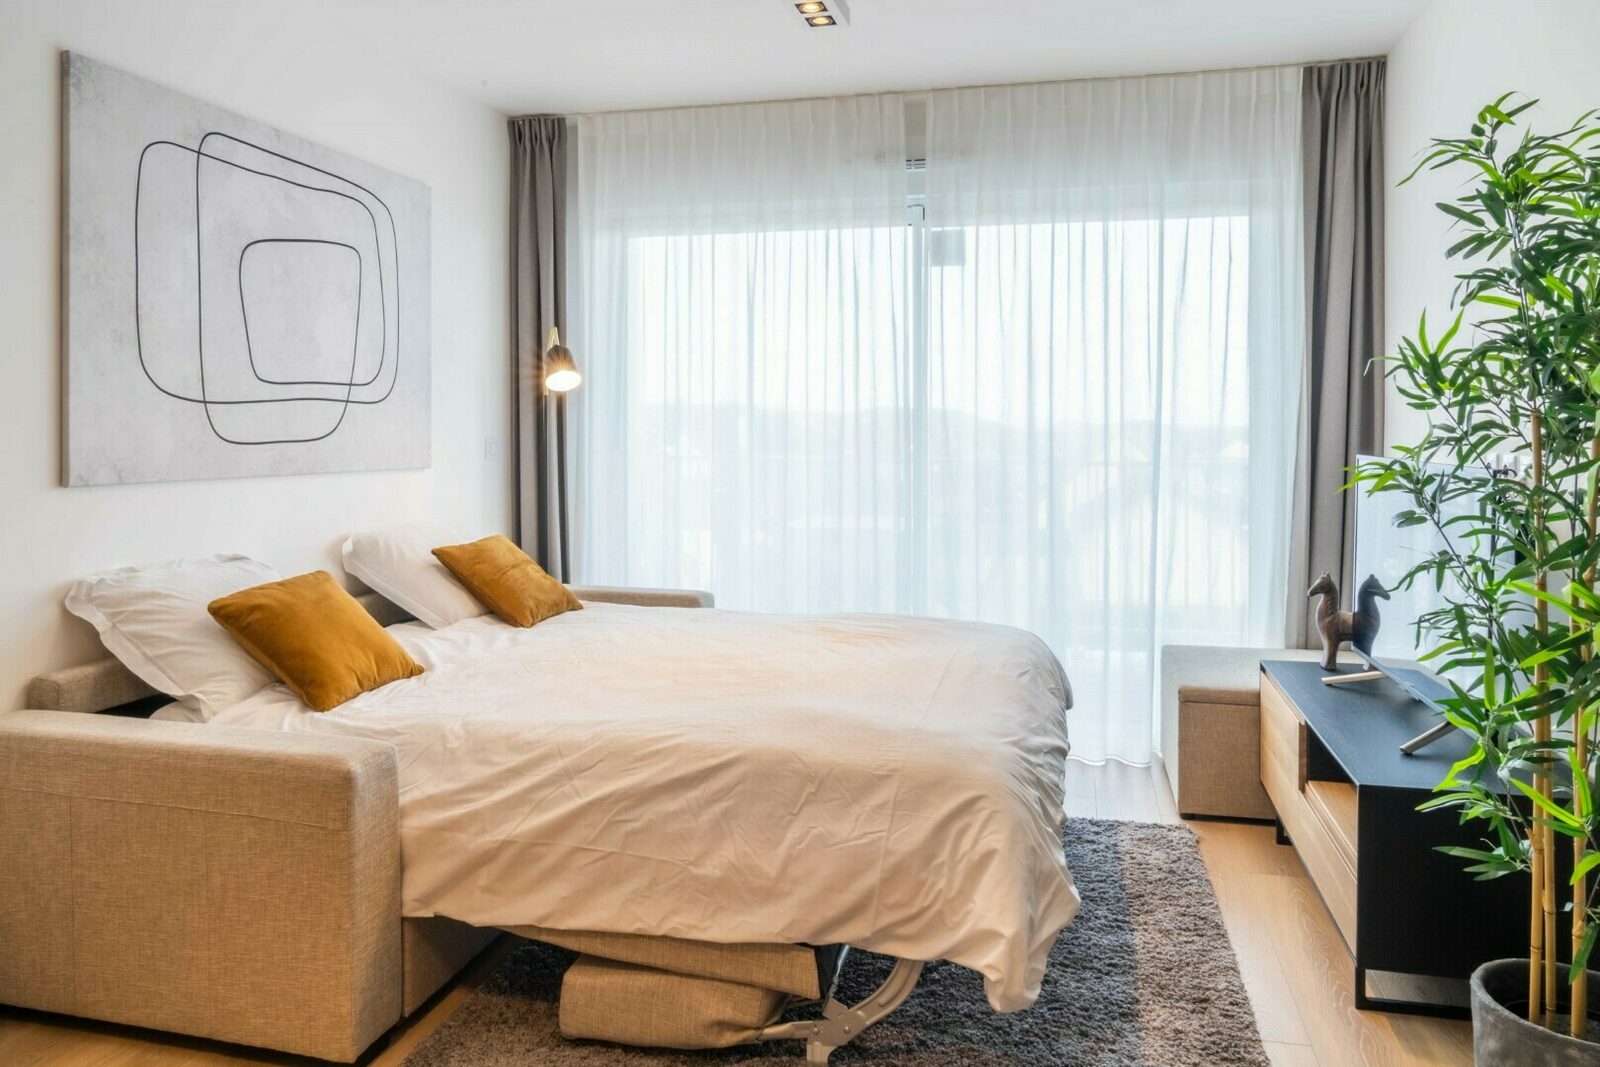 [Standard] Studio sofa bed & bunk beds